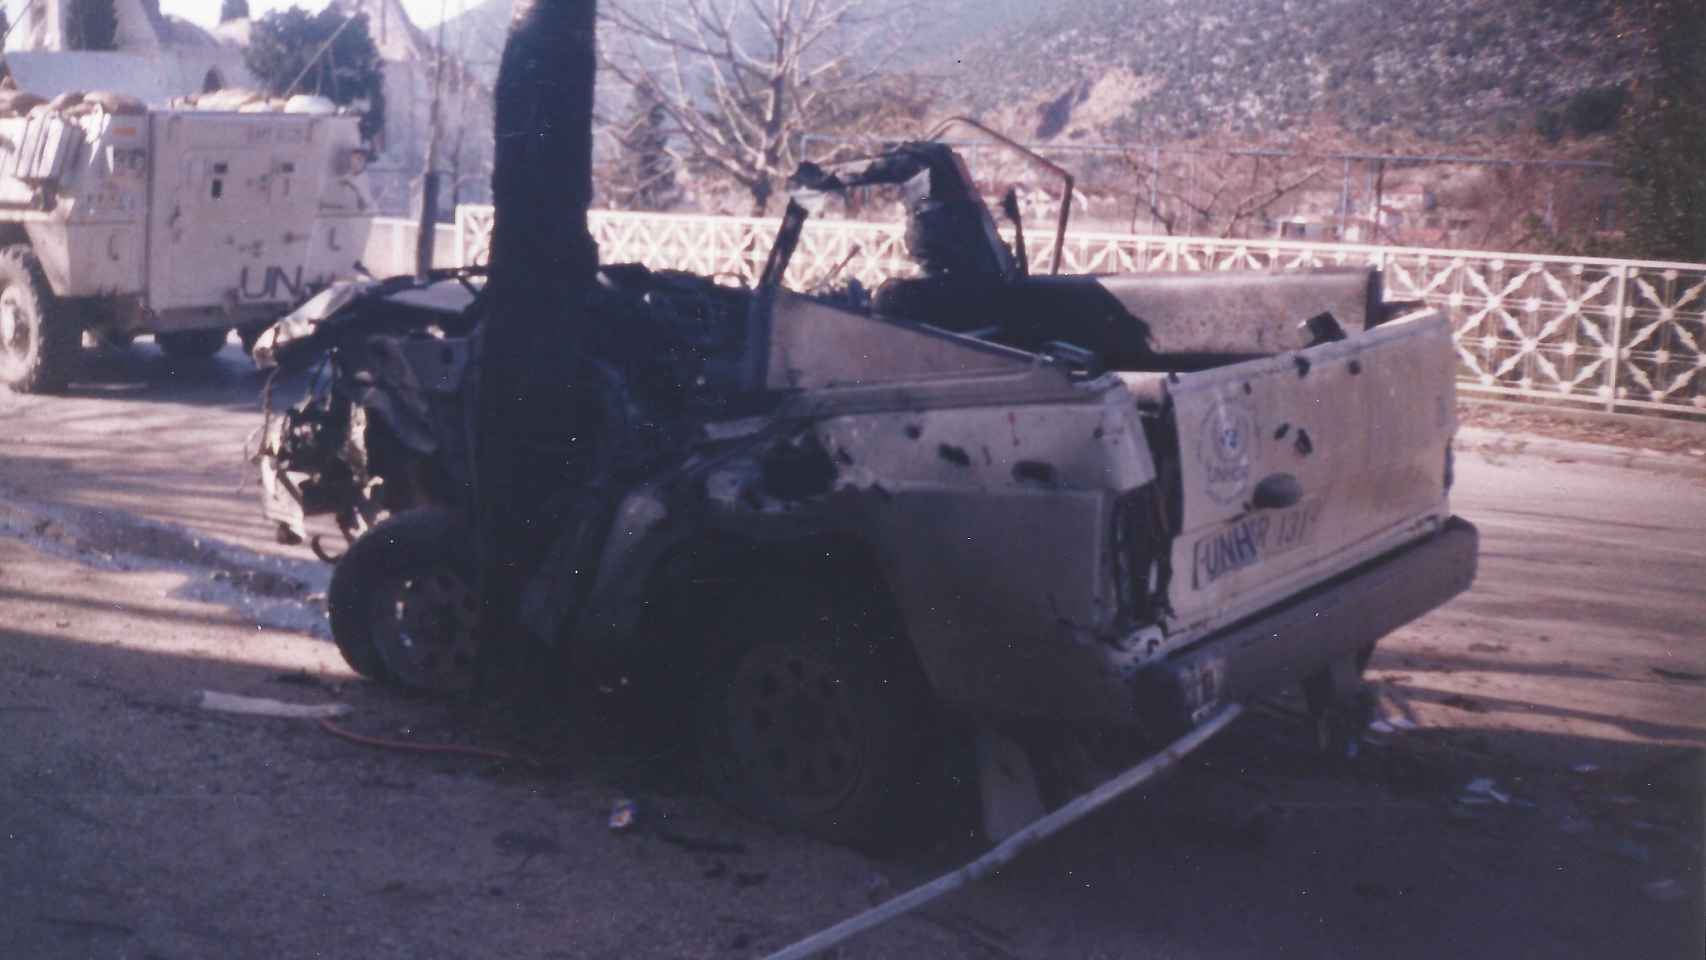 La guerra atenazaba Bosnia; en la imagen, un vehículo tiroteado.